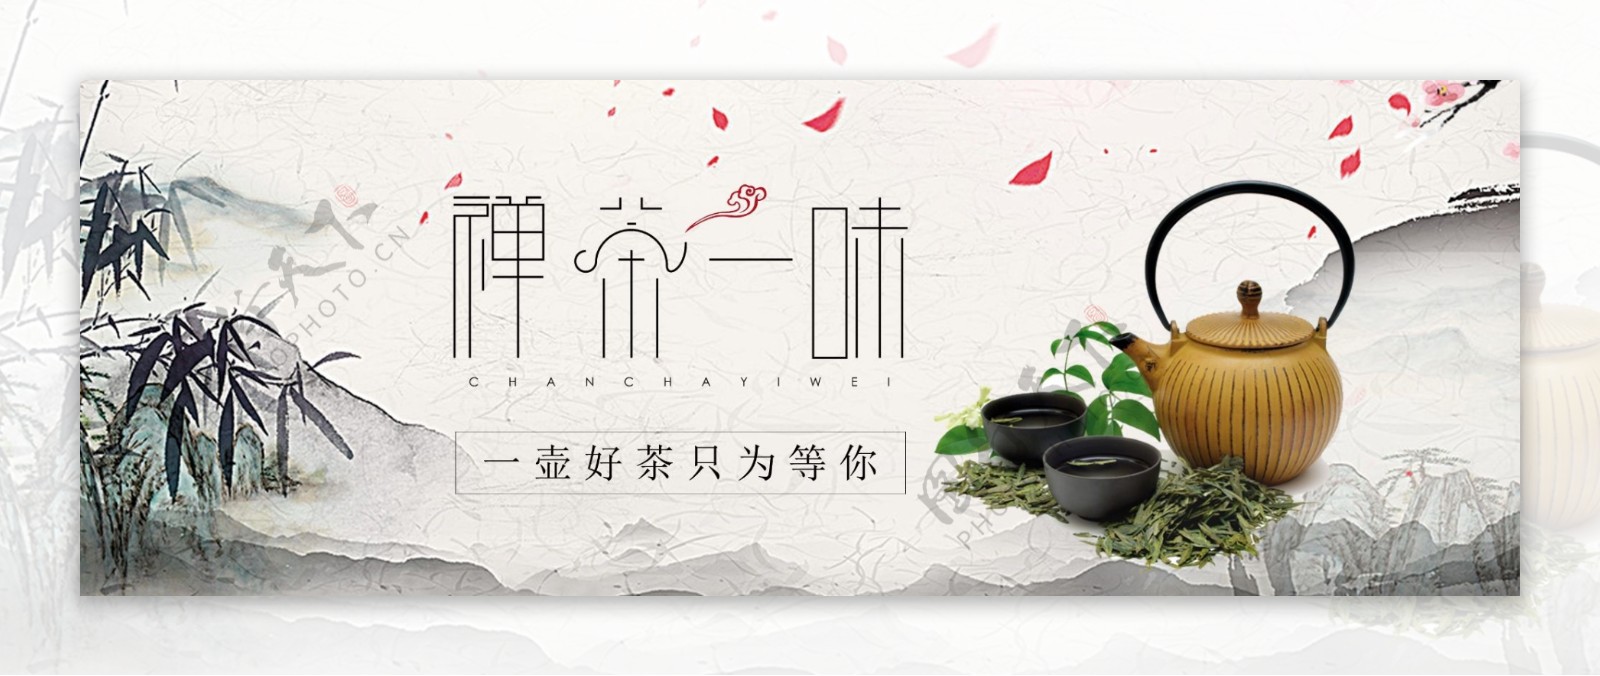 清新中国风茶道展板